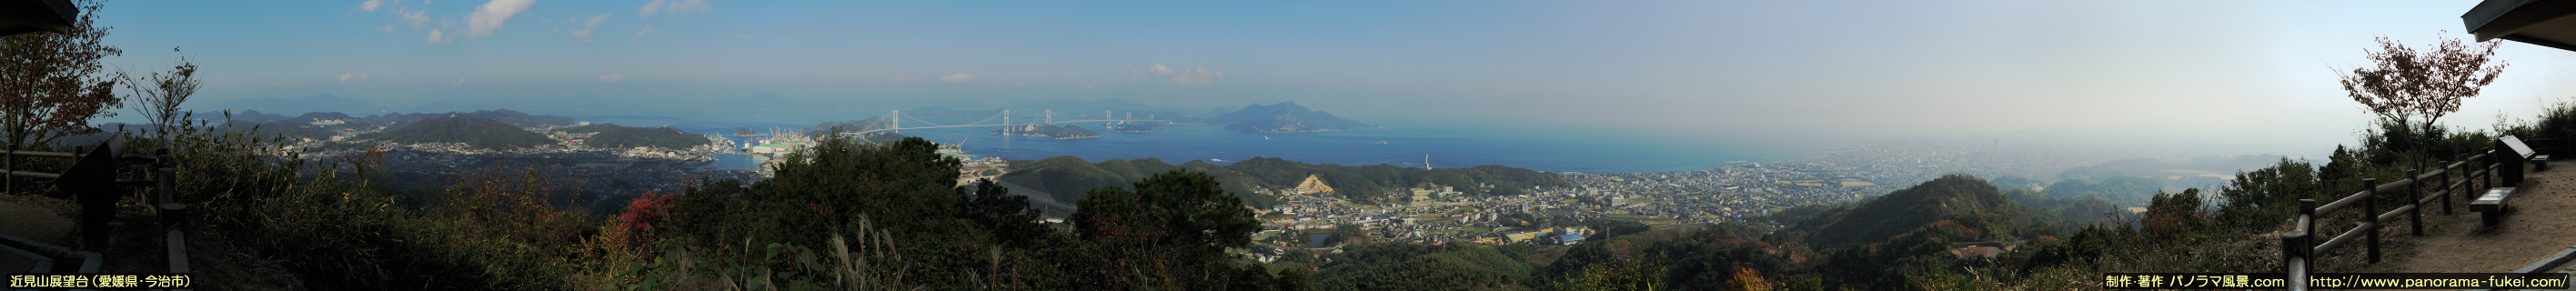 近見山展望台から望むしまなみ街道・来島海峡大橋と今治市街のパノラマ風景写真